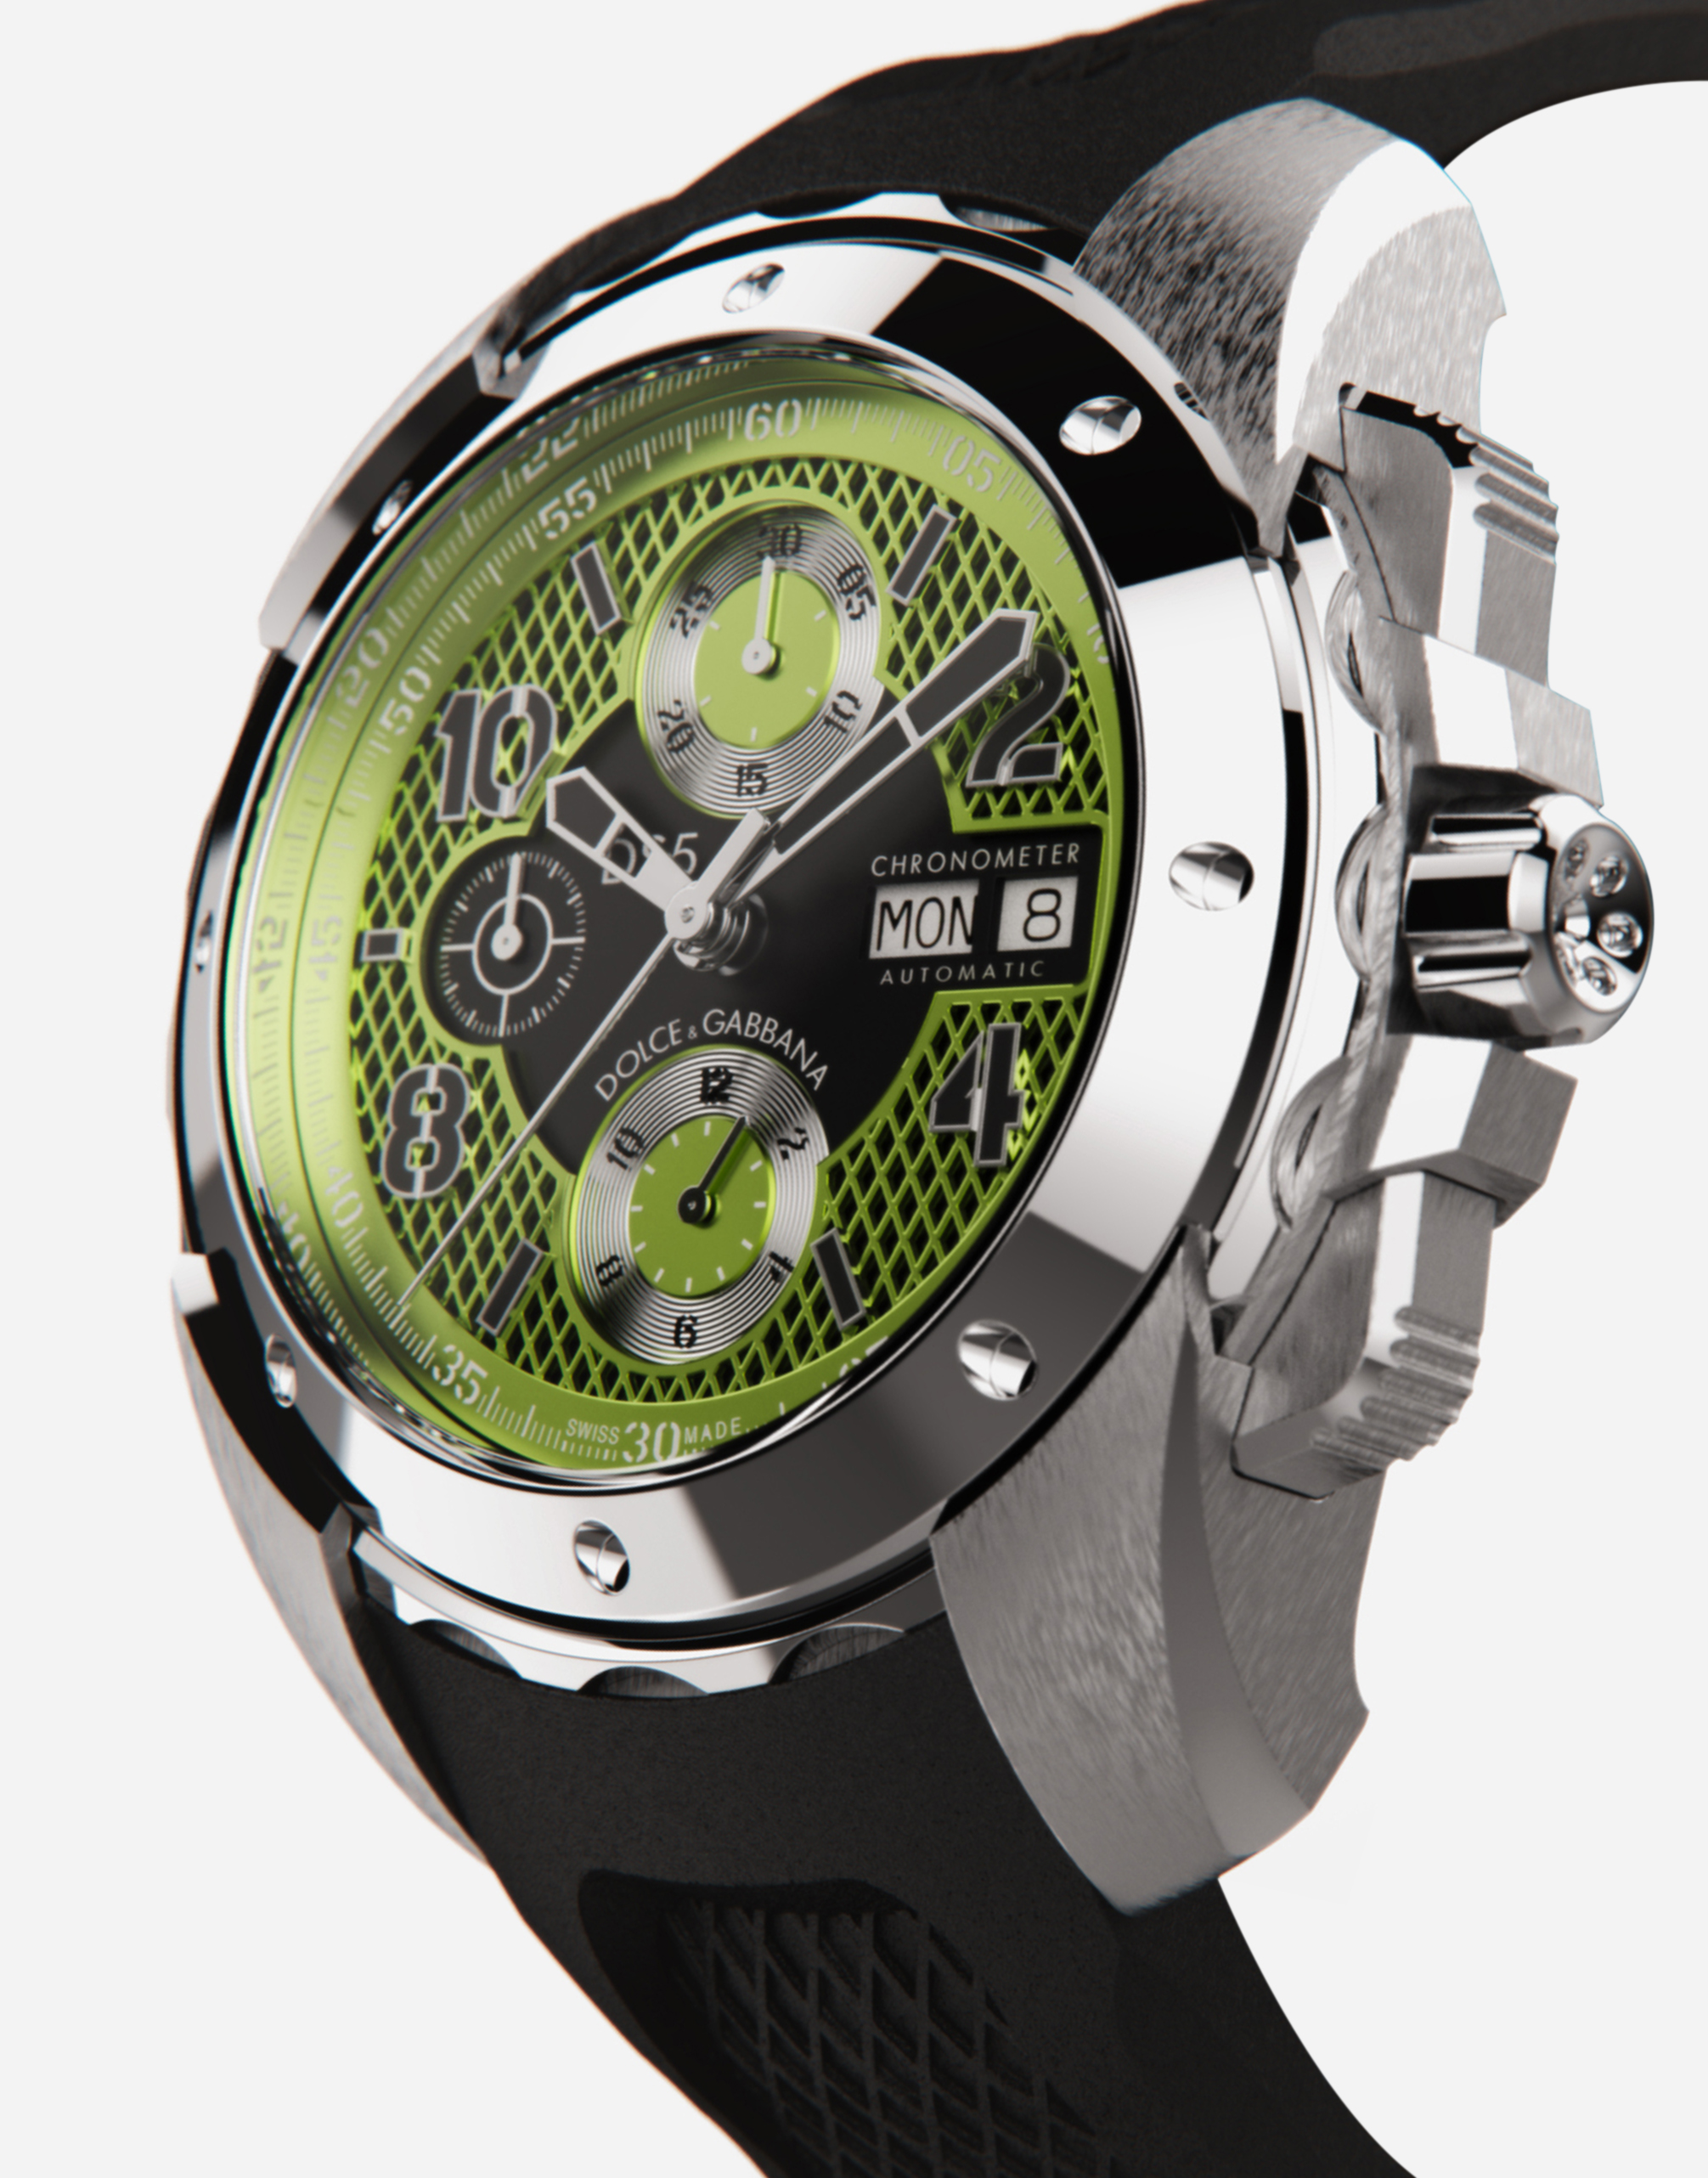 DS5 watch in steel